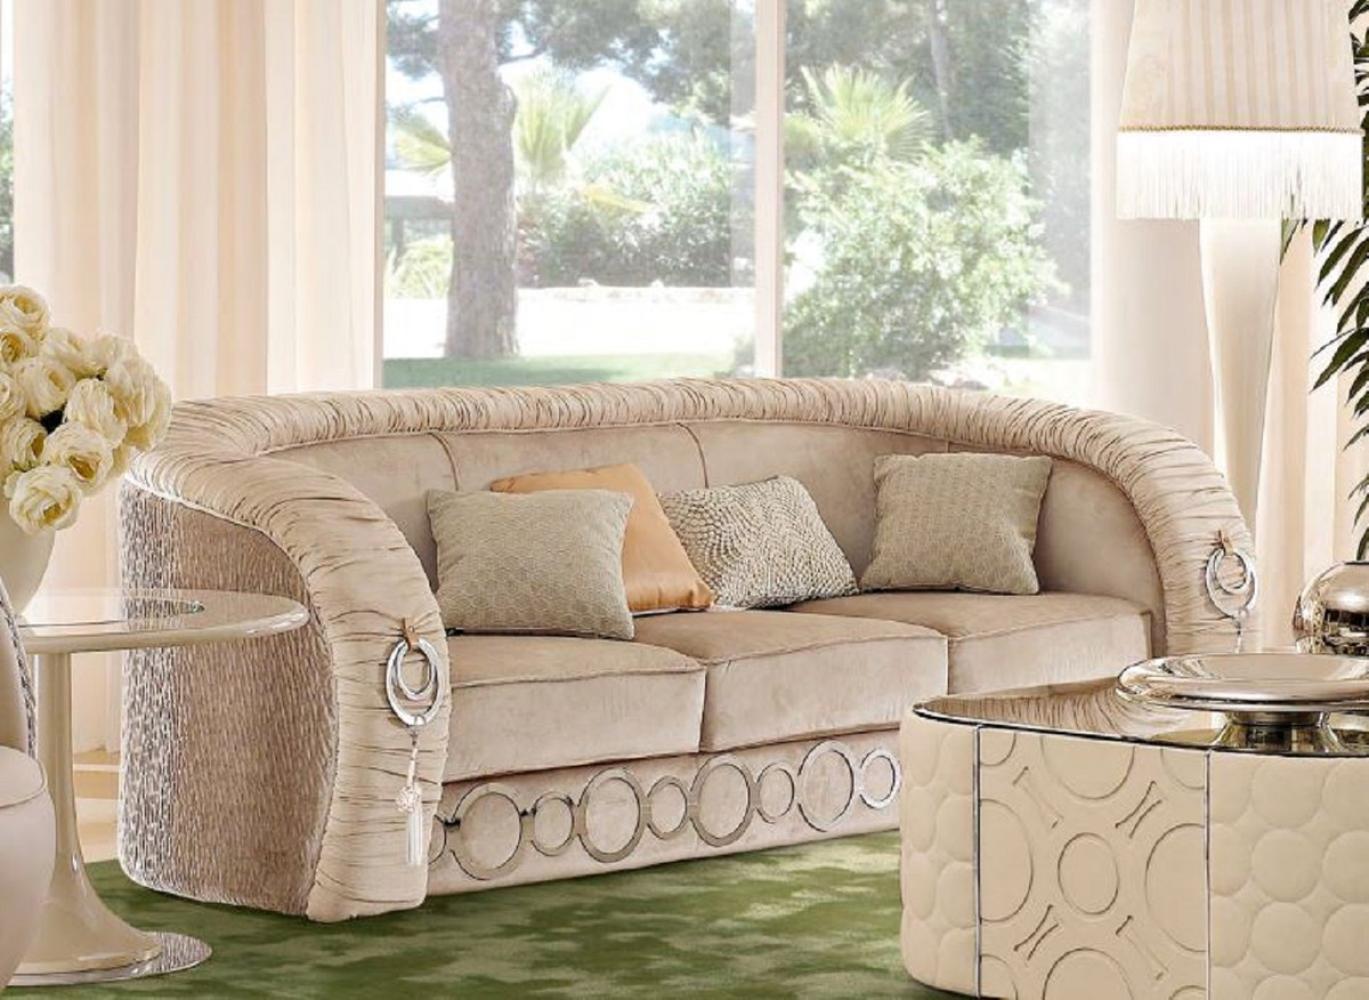 Casa Padrino Luxus Sofa mit Metall Ornamenten Beige / Silber 260 x 103 x H. 80 cm - Luxus Wohnzimmer & Hotel Möbel - Erstklassische Qualität - Made in Italy Bild 1